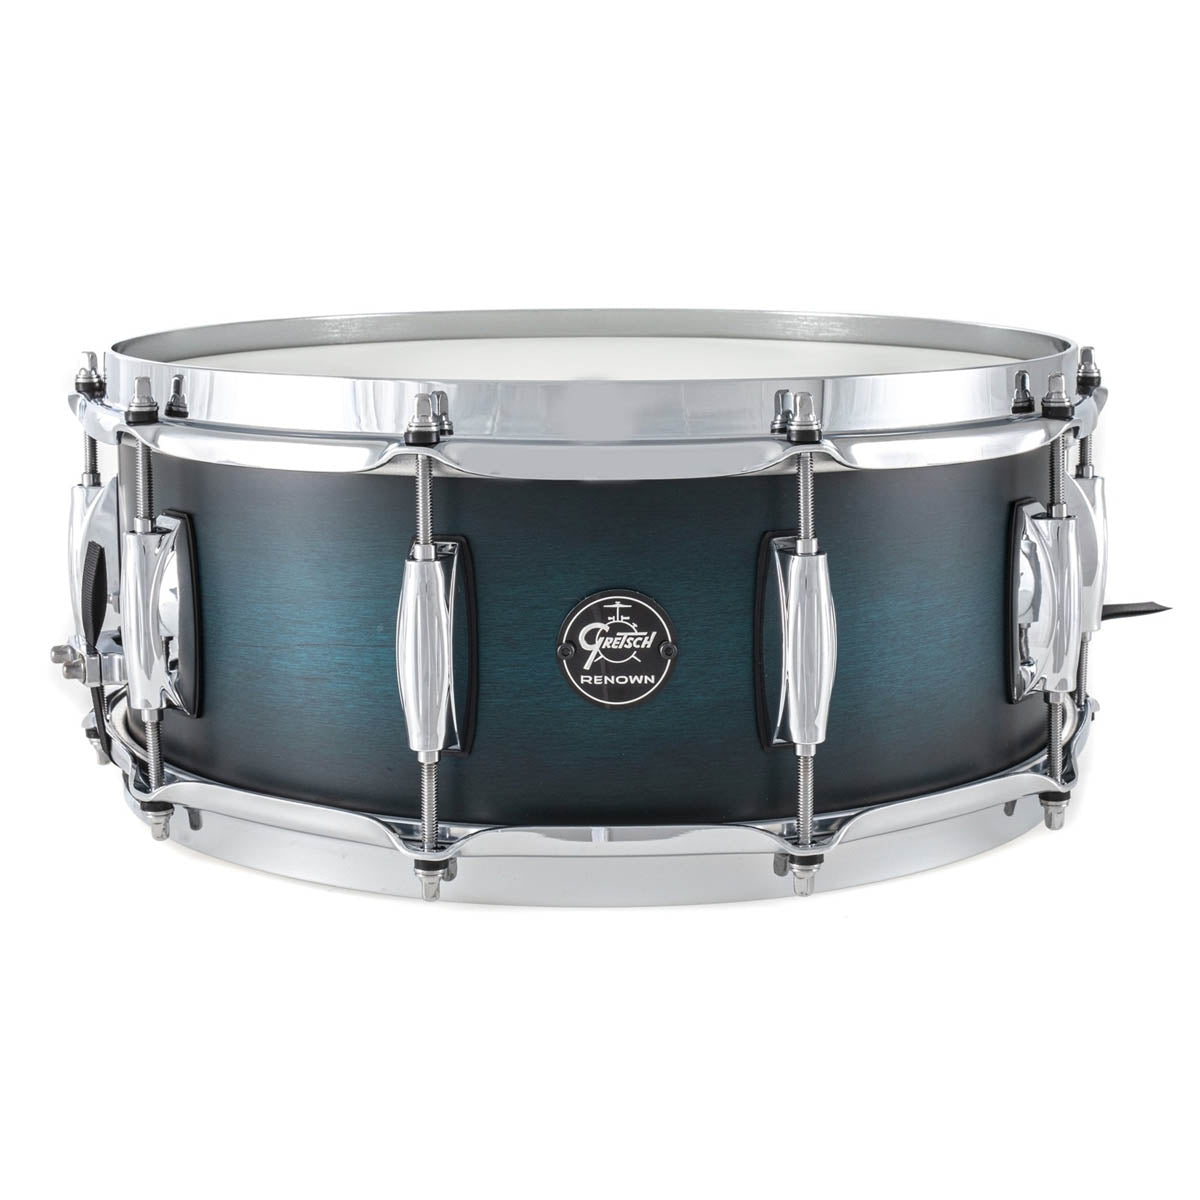 Gretsch Renown Maple 14"x5.5" Snare Drum in Satin Antique Blue Burst